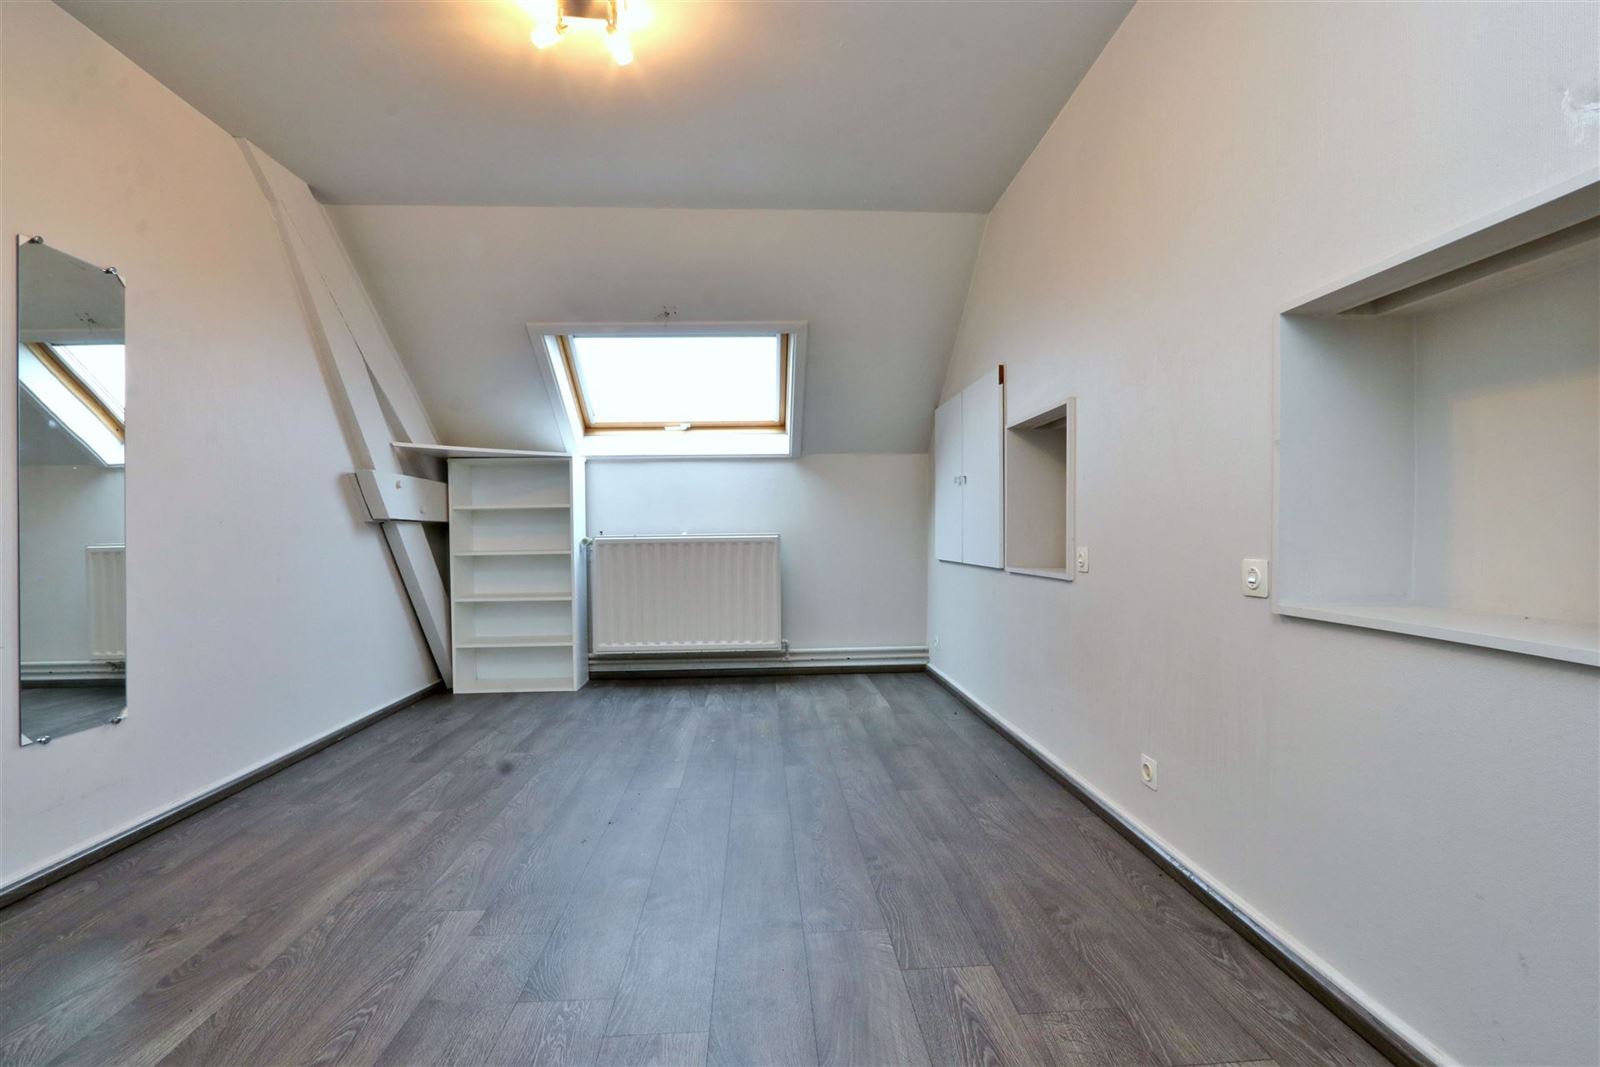 Duplex appartement (150m²) met 3 slaapkamers en terras te Centrum Beersel foto 8